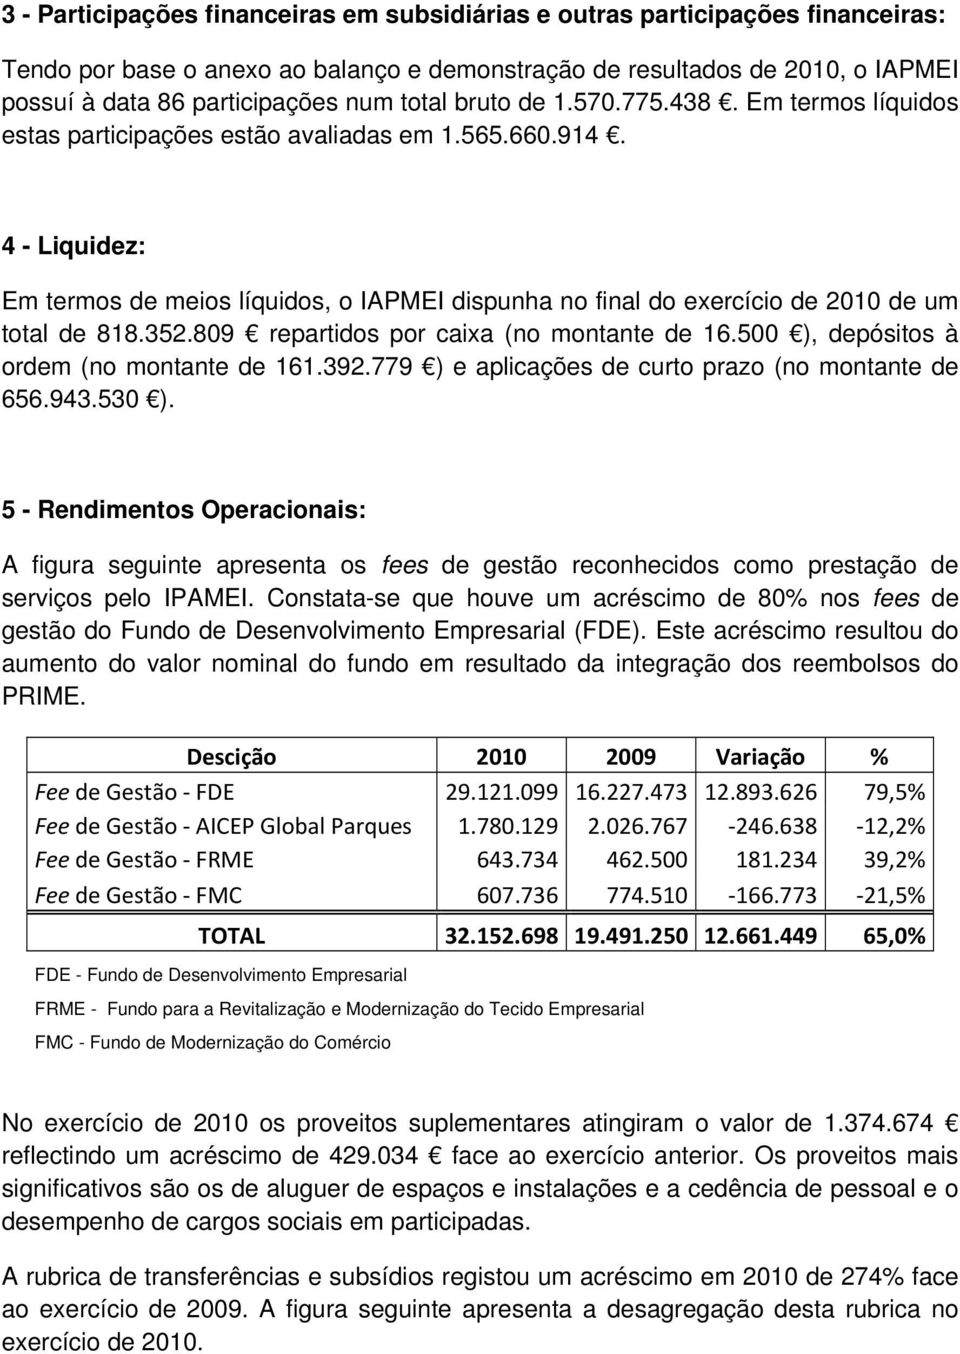 4 - Liquidez: Em termos de meios líquidos, o IAPMEI dispunha no final do exercício de 2010 de um total de 818.352.809 repartidos por caixa (no montante de 16.